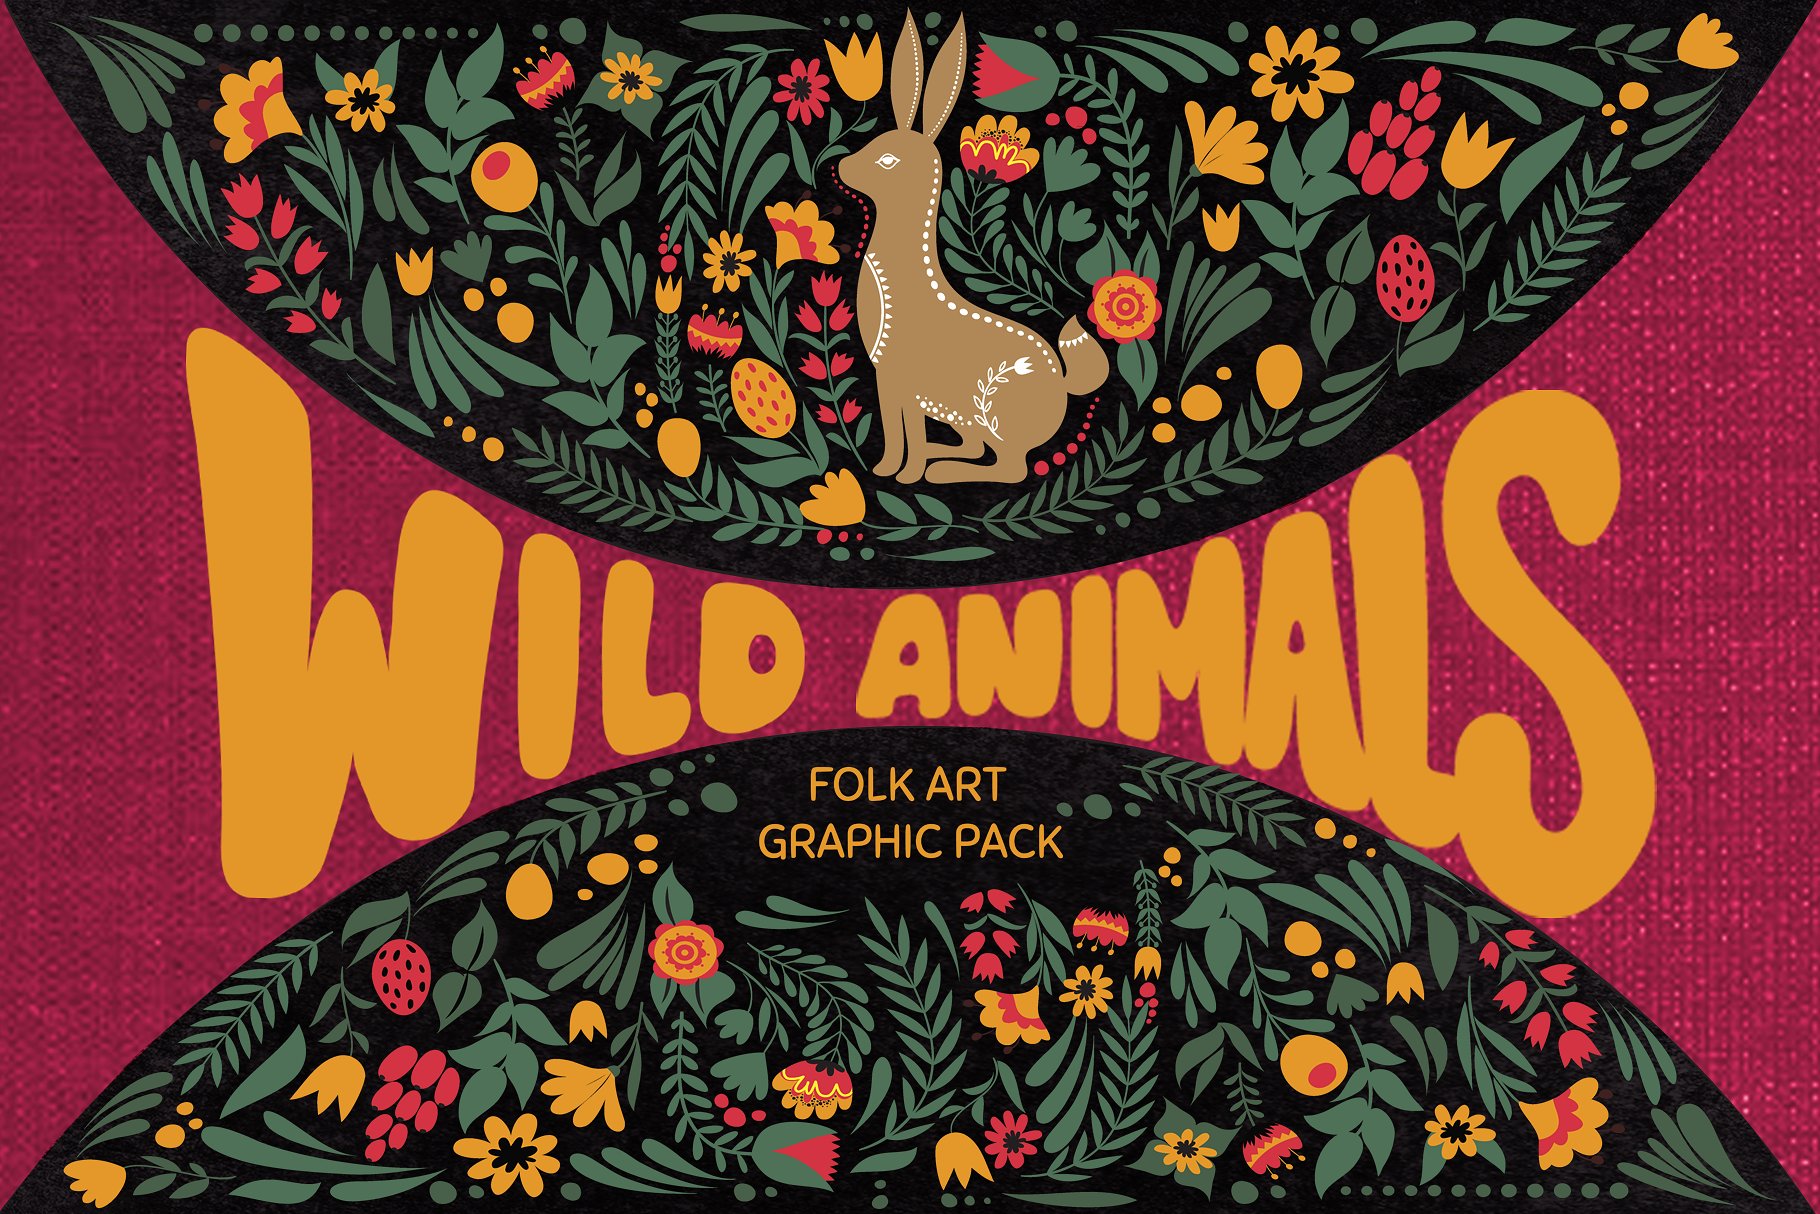 民间艺术野生动物图案合辑包 Wild Animals fol